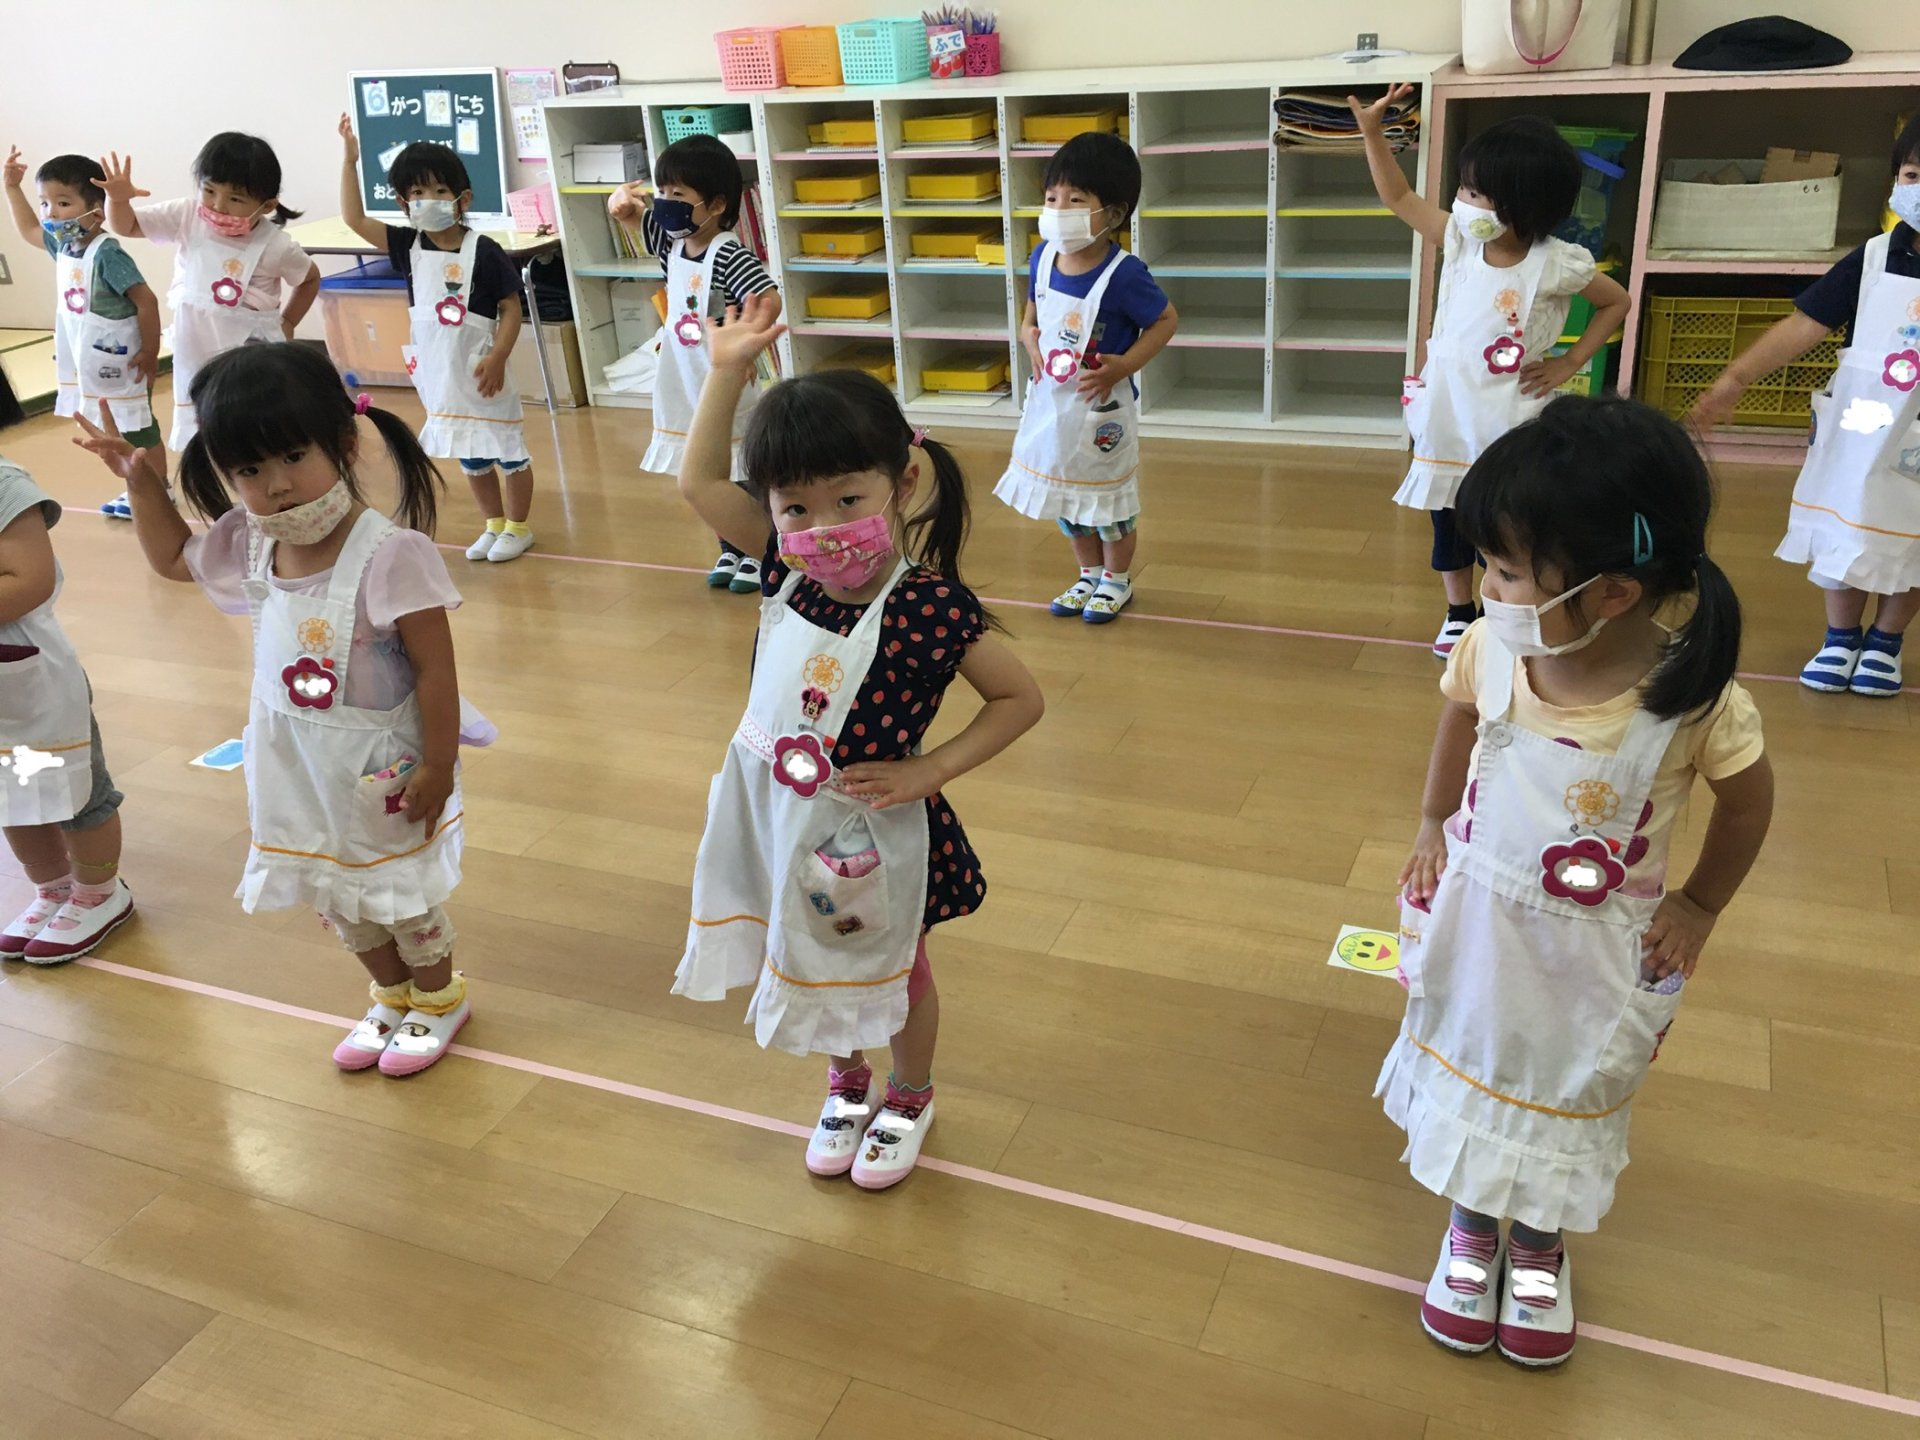 歌と盆踊り お東幼稚園 名古屋市中区東別院の幼稚園